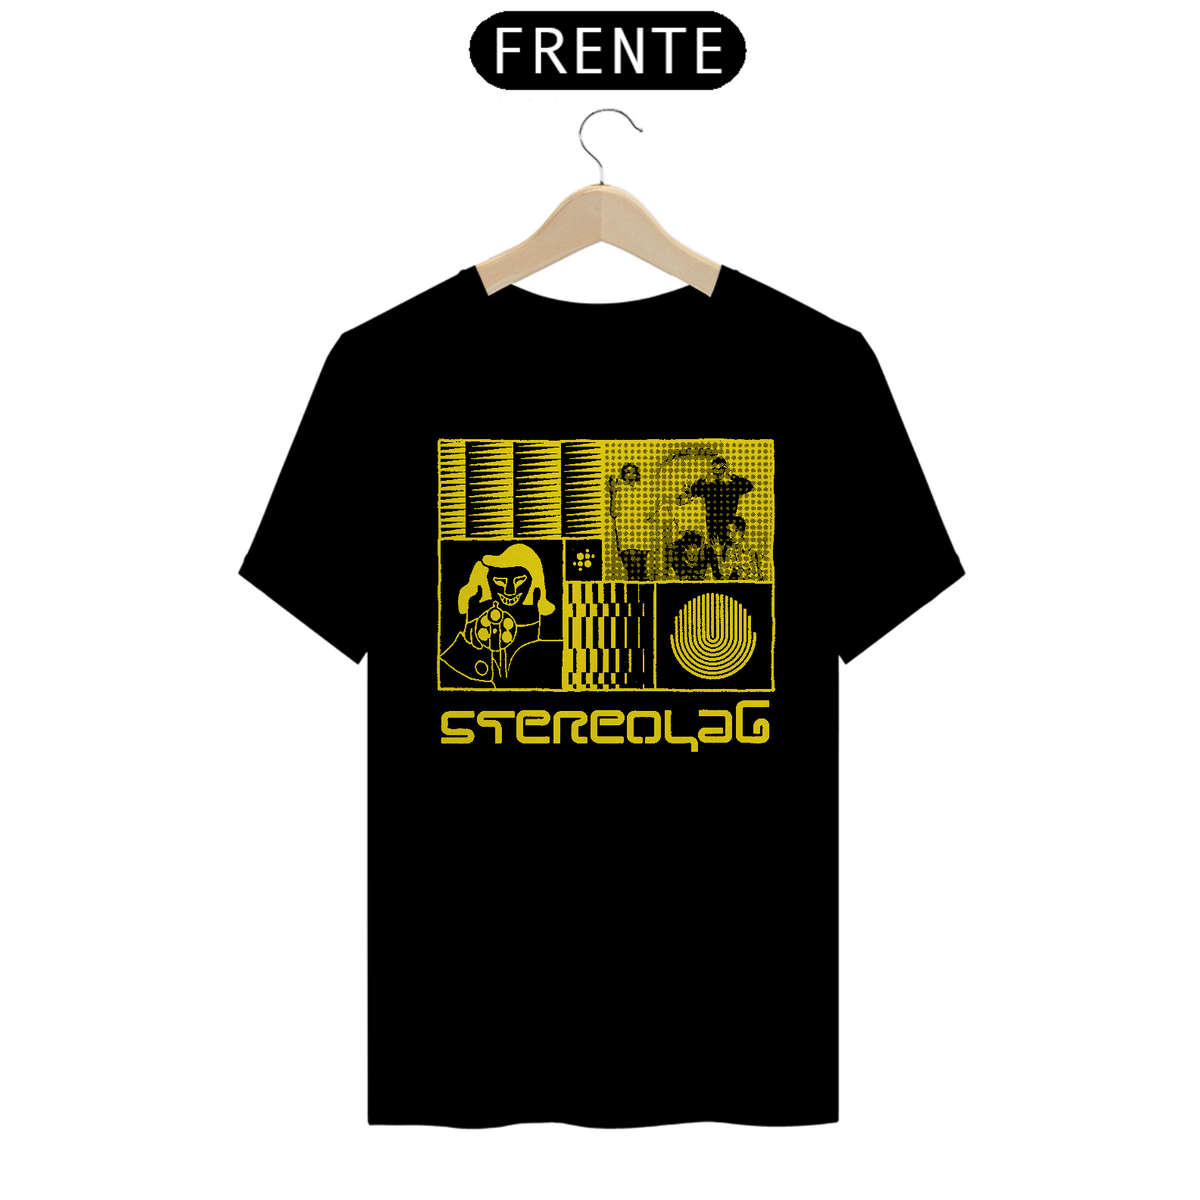 Nome do produto: Stereolab